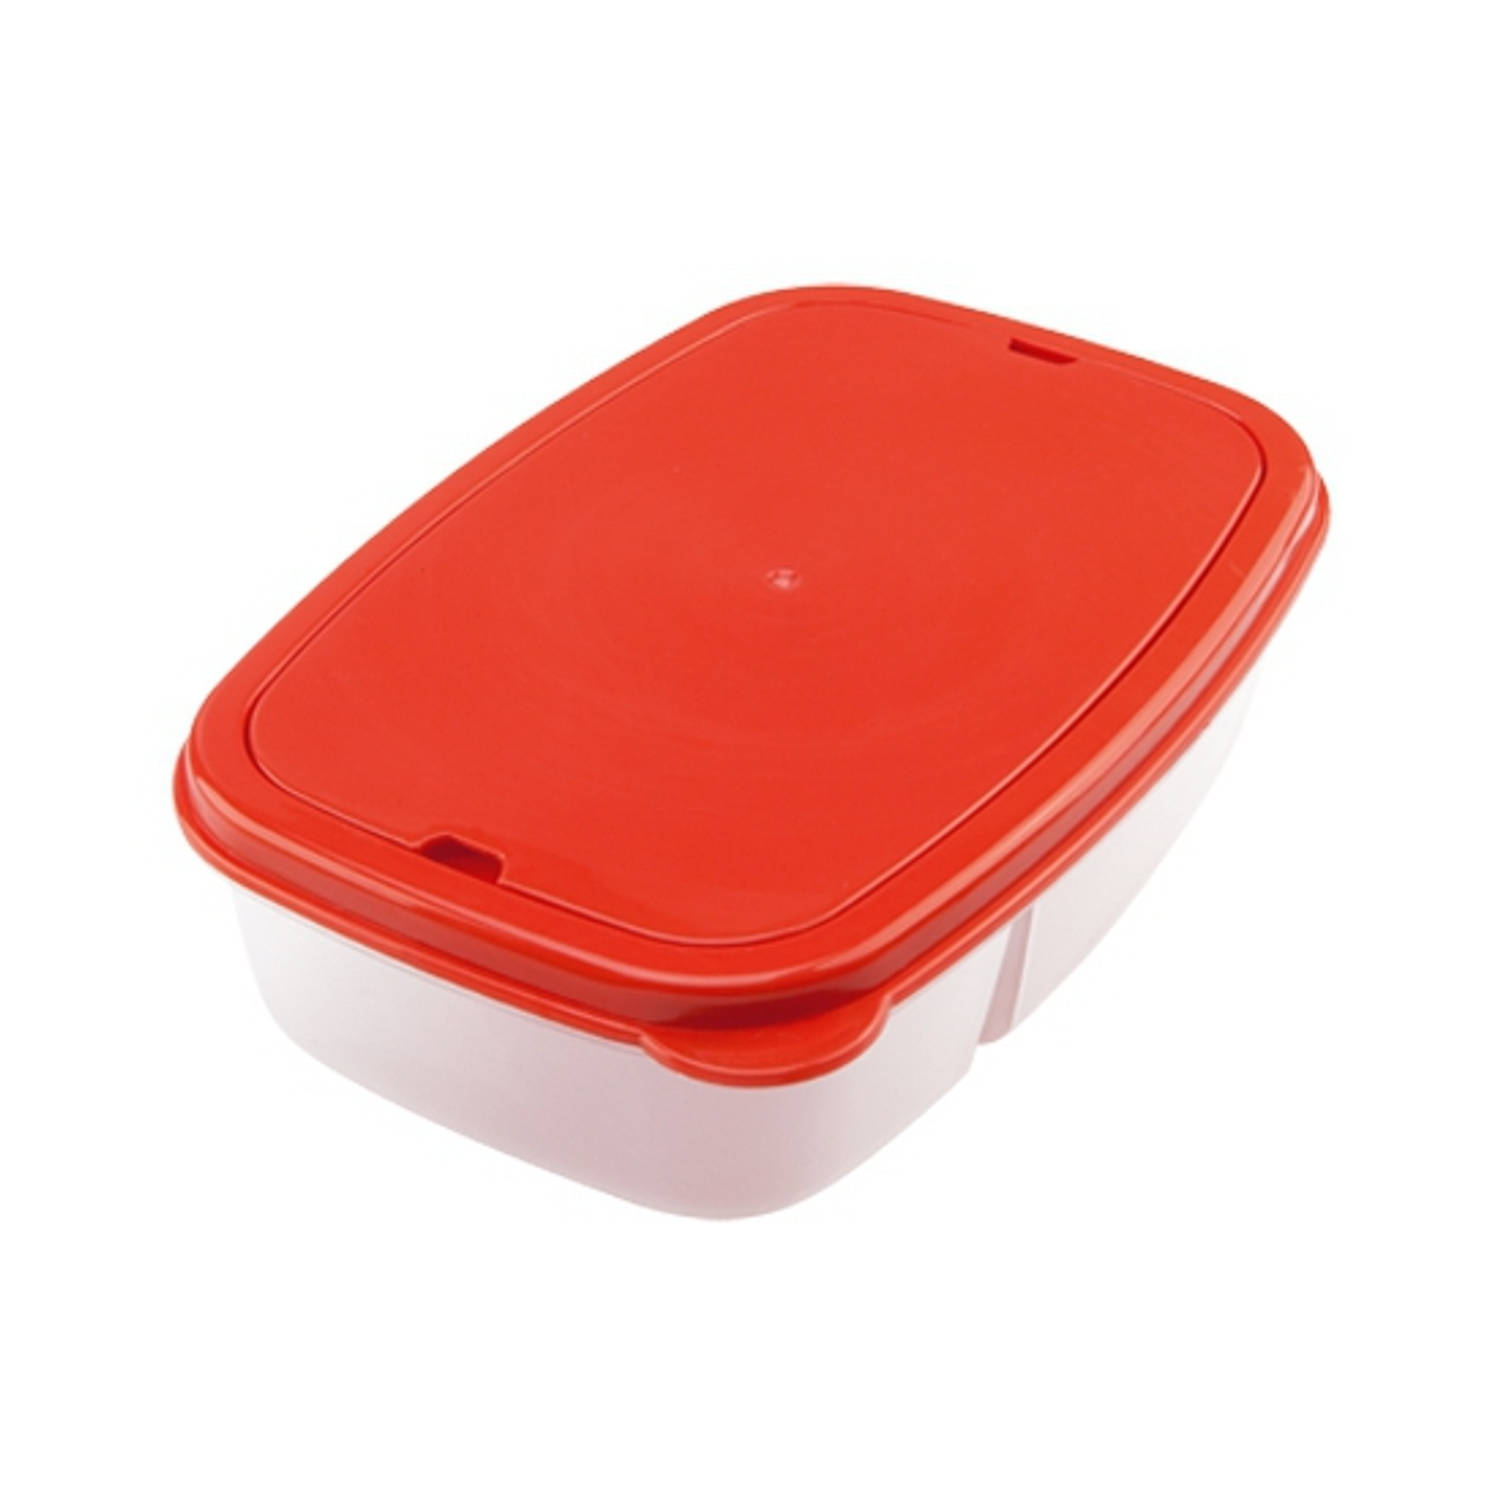 Rode Broodtrommel Met Bestek - Lunchboxen